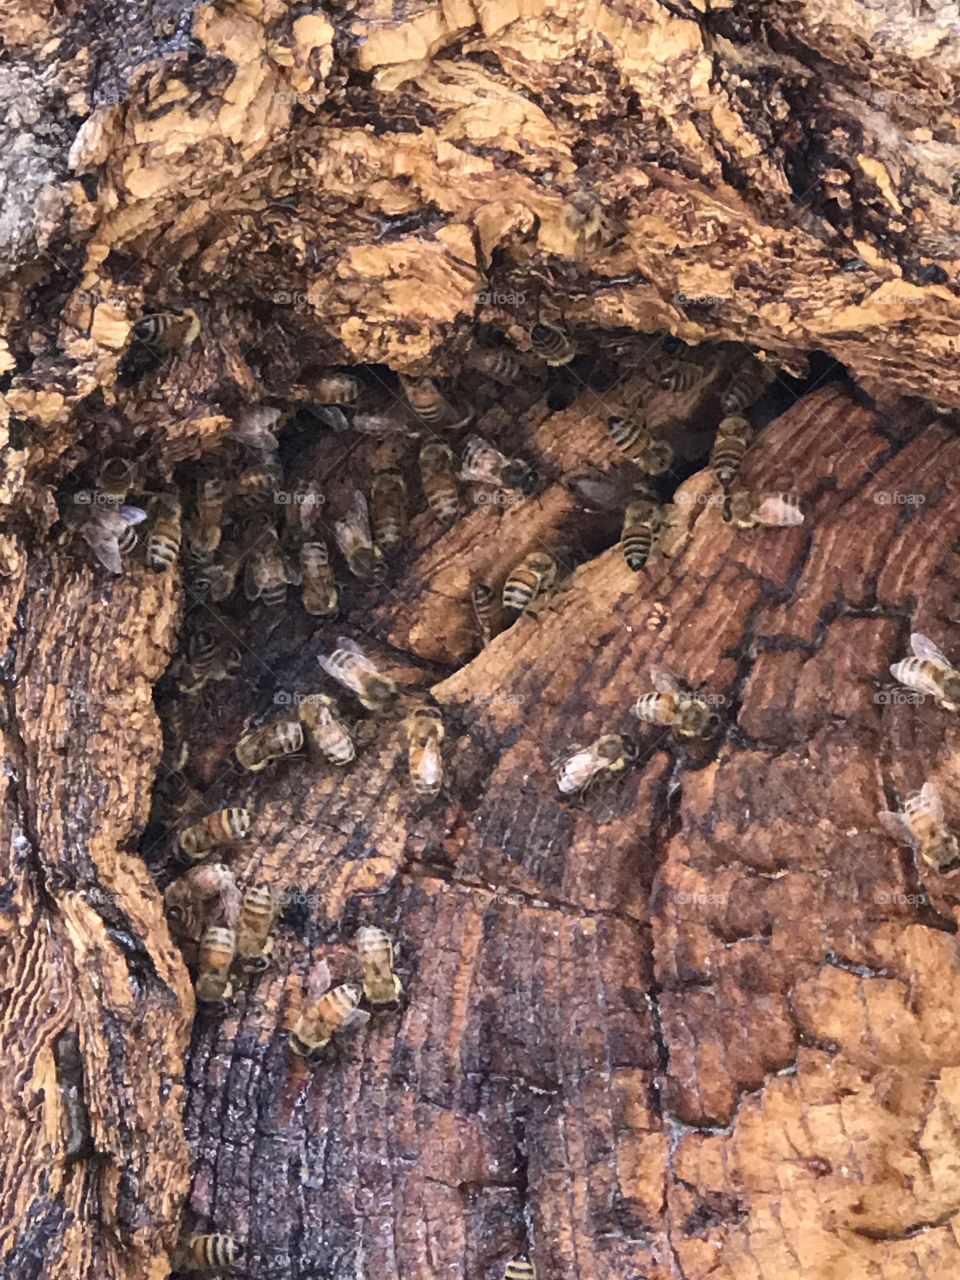 Local honey bee hive in downtown Ogden Utah. 